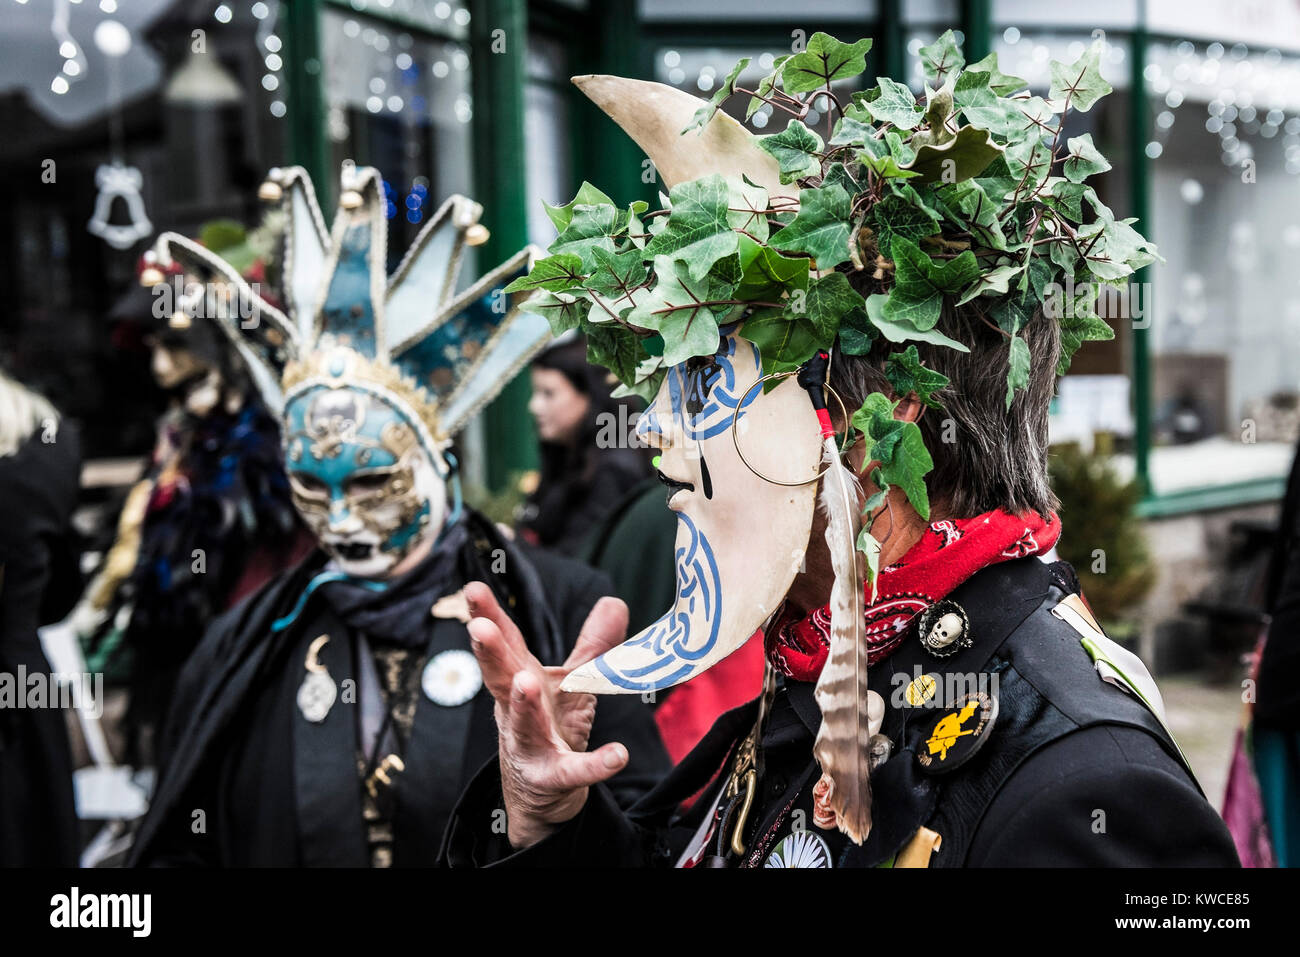 Le Festival Montol dans Penzance célébrant le solstice d'hiver. Banque D'Images